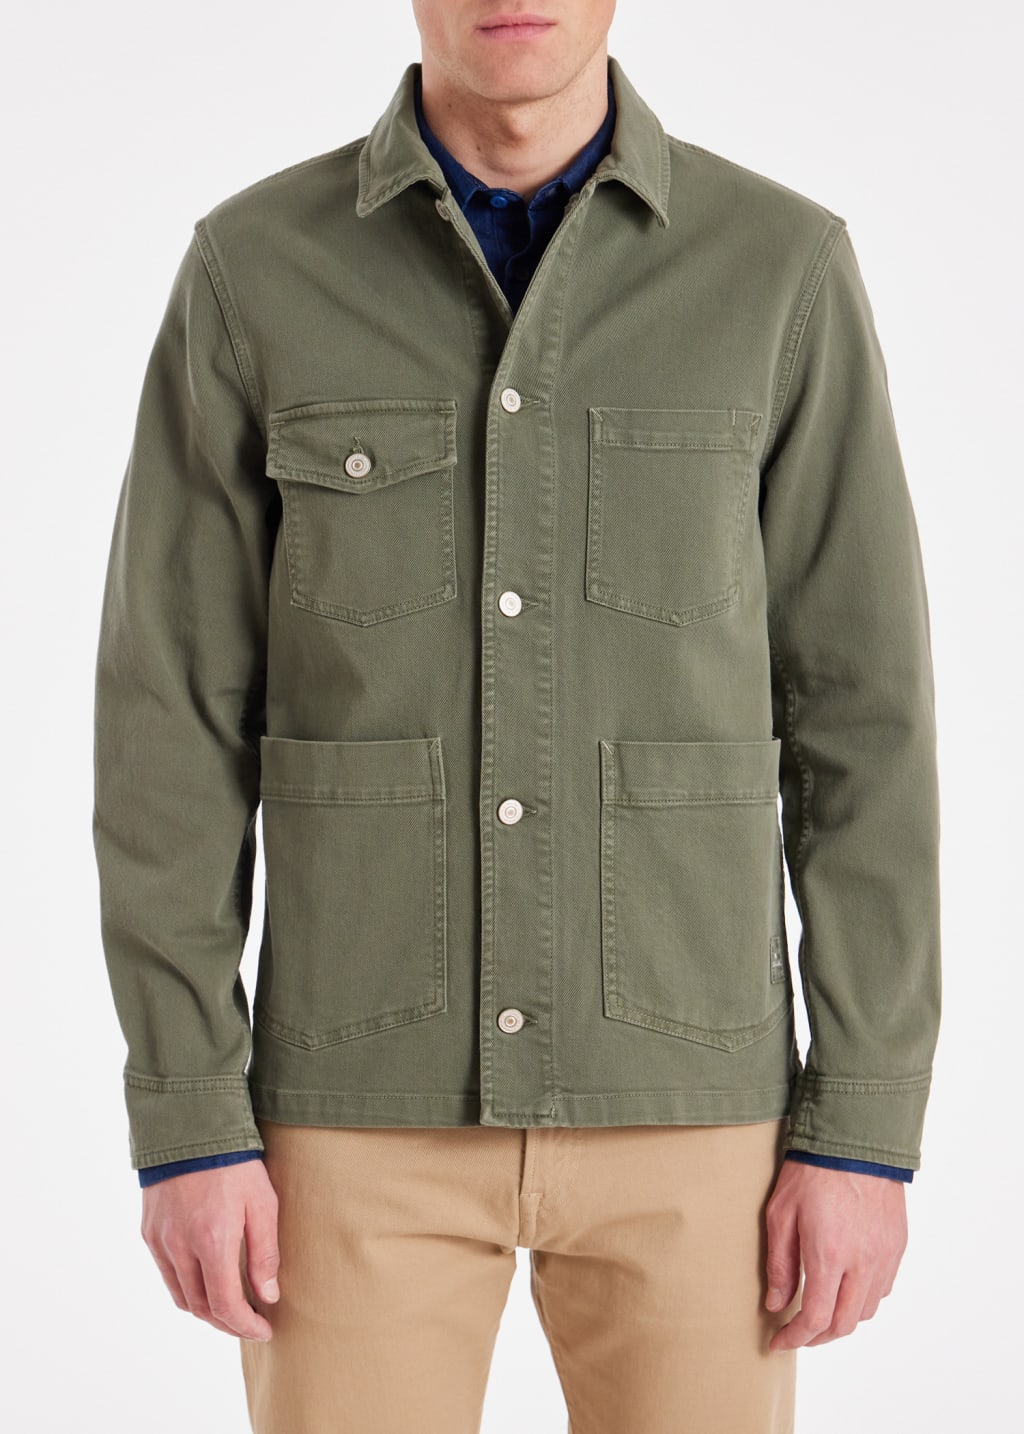 Model view - Khaki Green Stretch-Cotton Chore Jacket